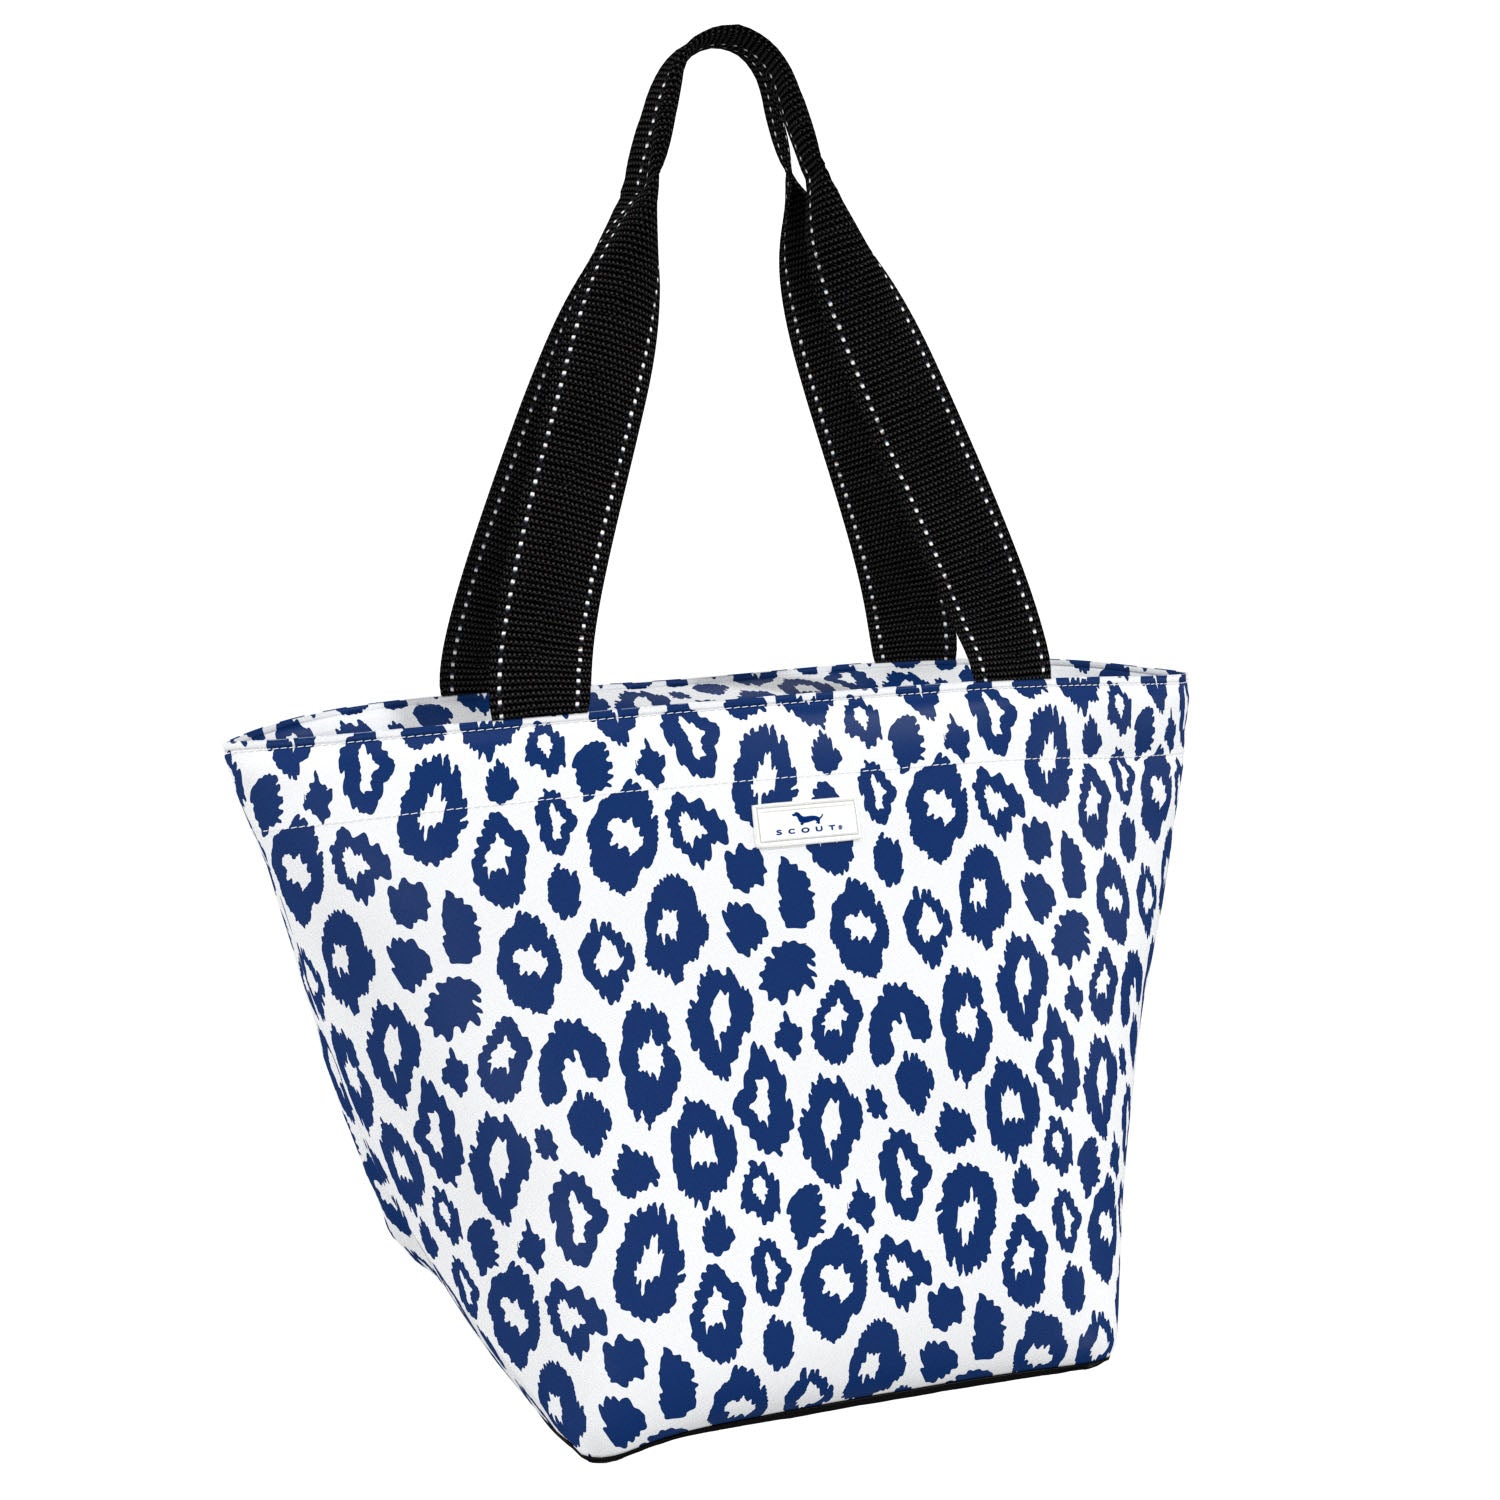  Leopard Shoulder Bag Soft Large Tote Purse Handbag